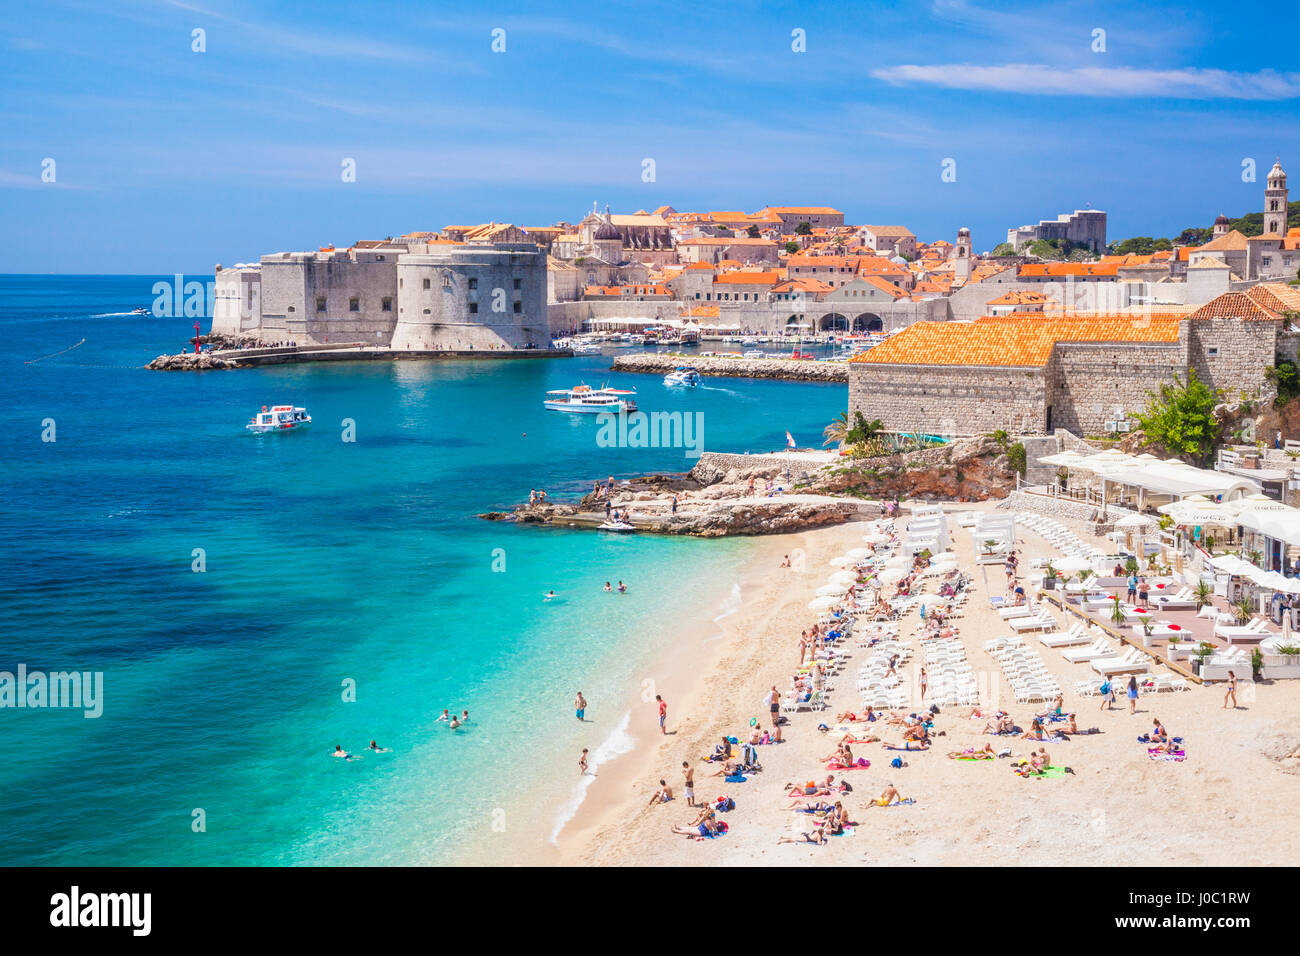 La playa Banje, el viejo puerto y el casco antiguo de Dubrovnik, Dubrovnik, la costa Dálmata, Croacia Foto de stock